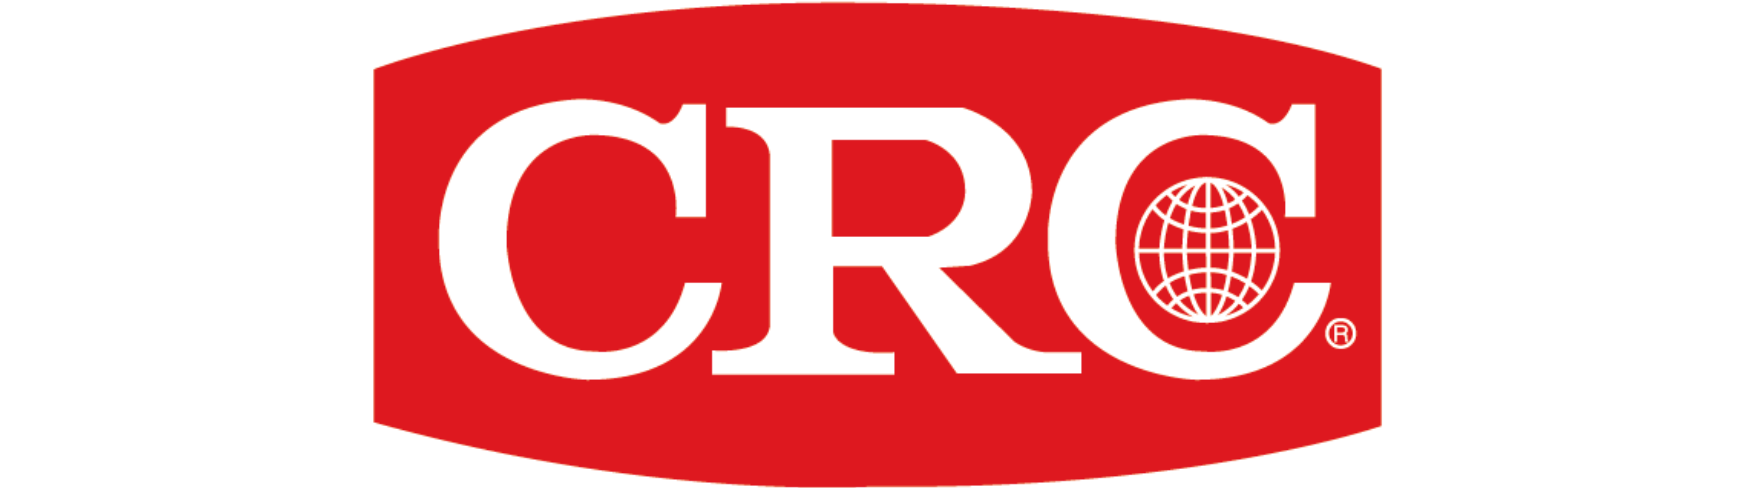 Crc